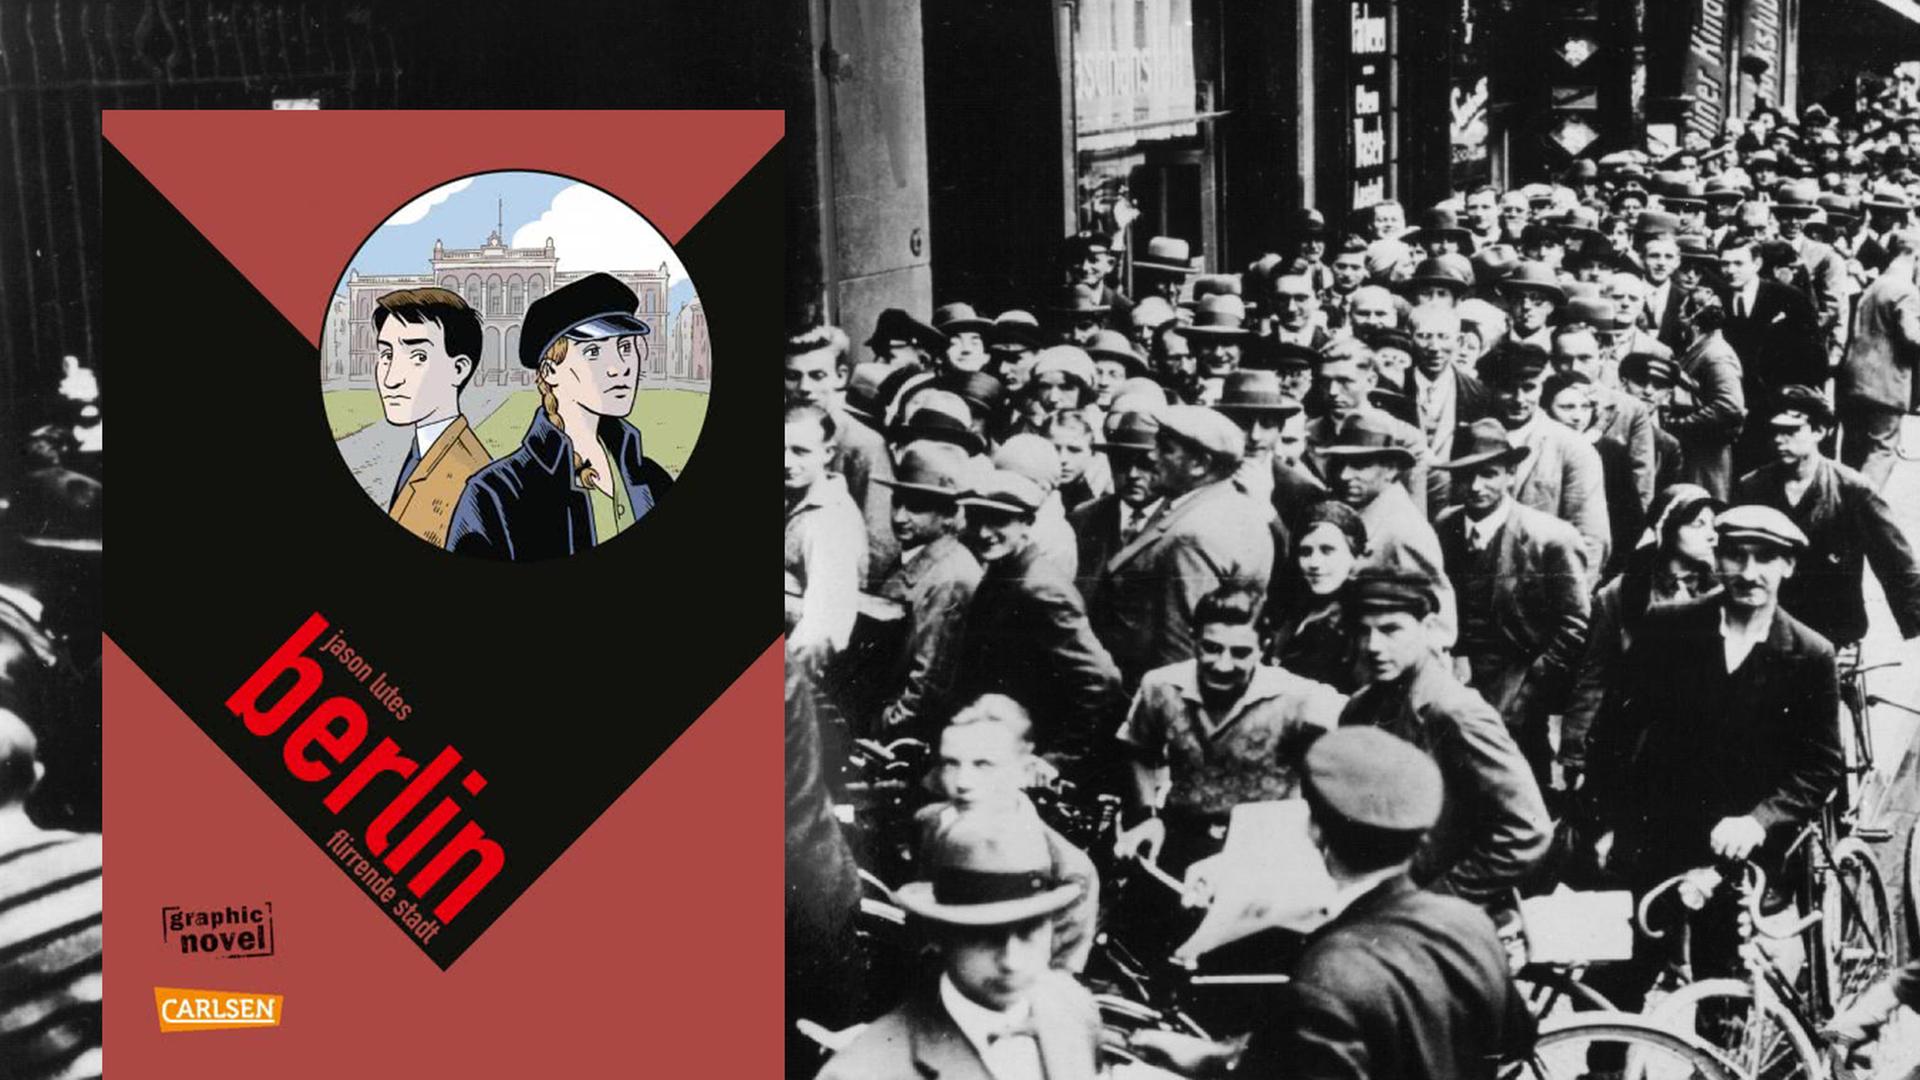 Im Vordergrund das Cover von "Berlin: Flirrende Stadt". Im Hintergrund eine Szene aus der Weimarer Republick